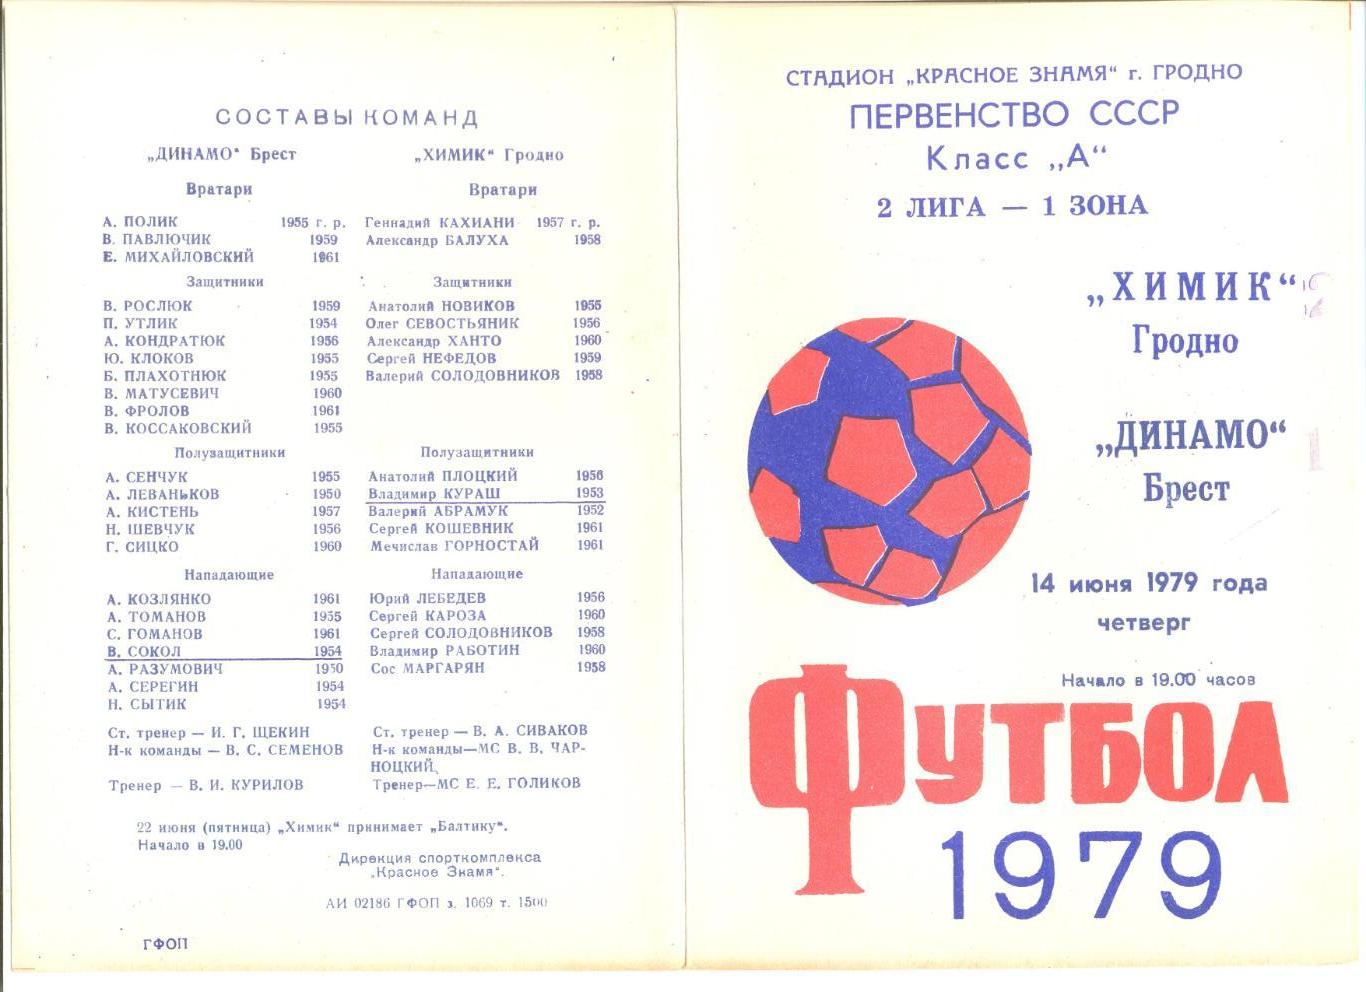 Химик Гродно - Динамо Брест 14.06.1979 г.